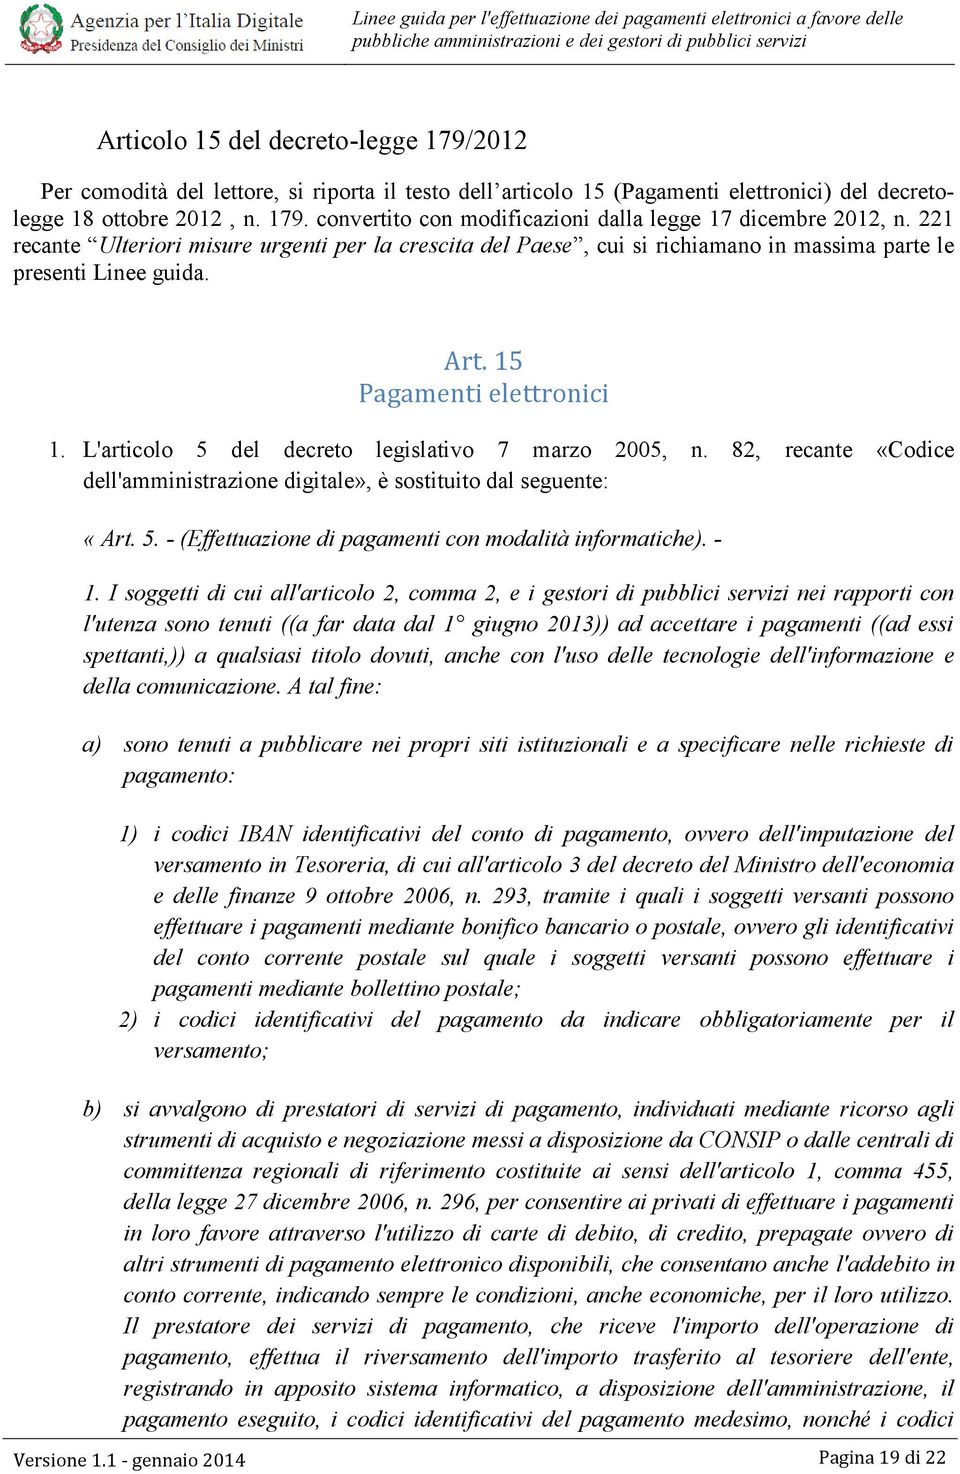 L'articolo 5 del decreto legislativo 7 marzo 2005, n. 82, recante «Codice dell'amministrazione digitale», è sostituito dal seguente: «Art. 5. - (Effettuazione di pagamenti con modalità informatiche).